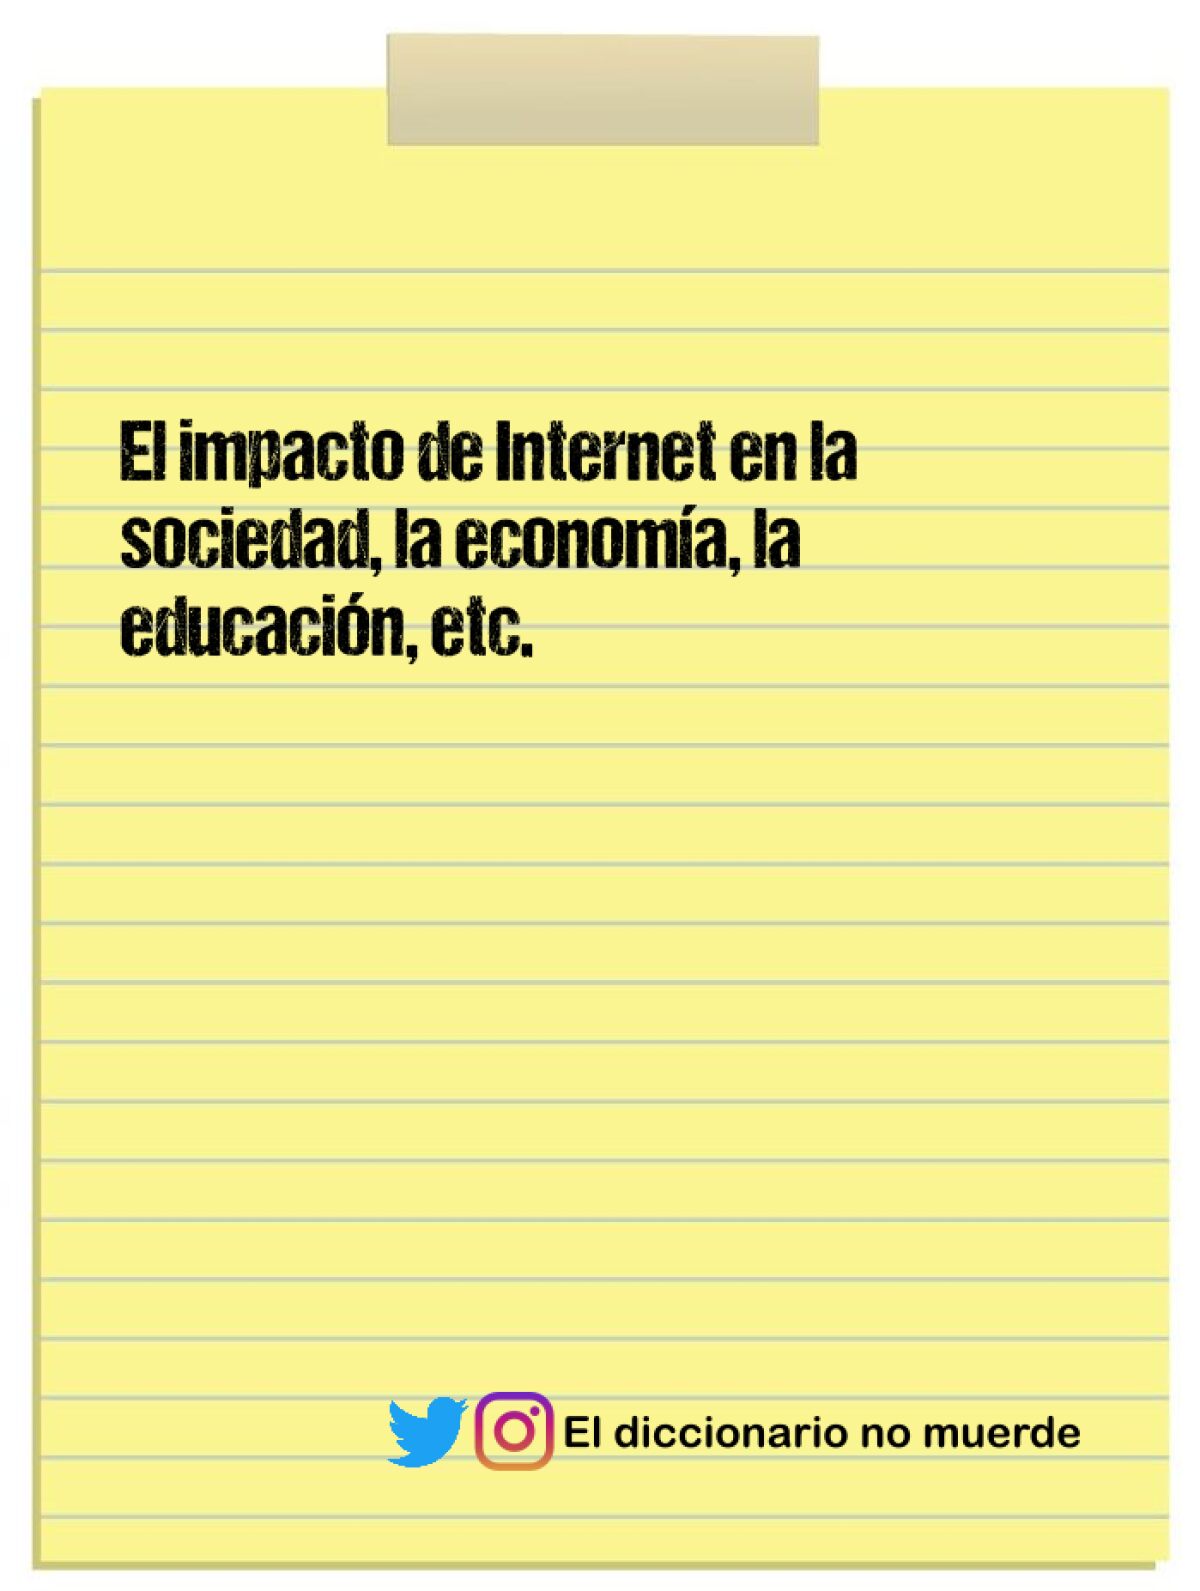 El impacto de Internet en la sociedad, la economía, la educación, etc.